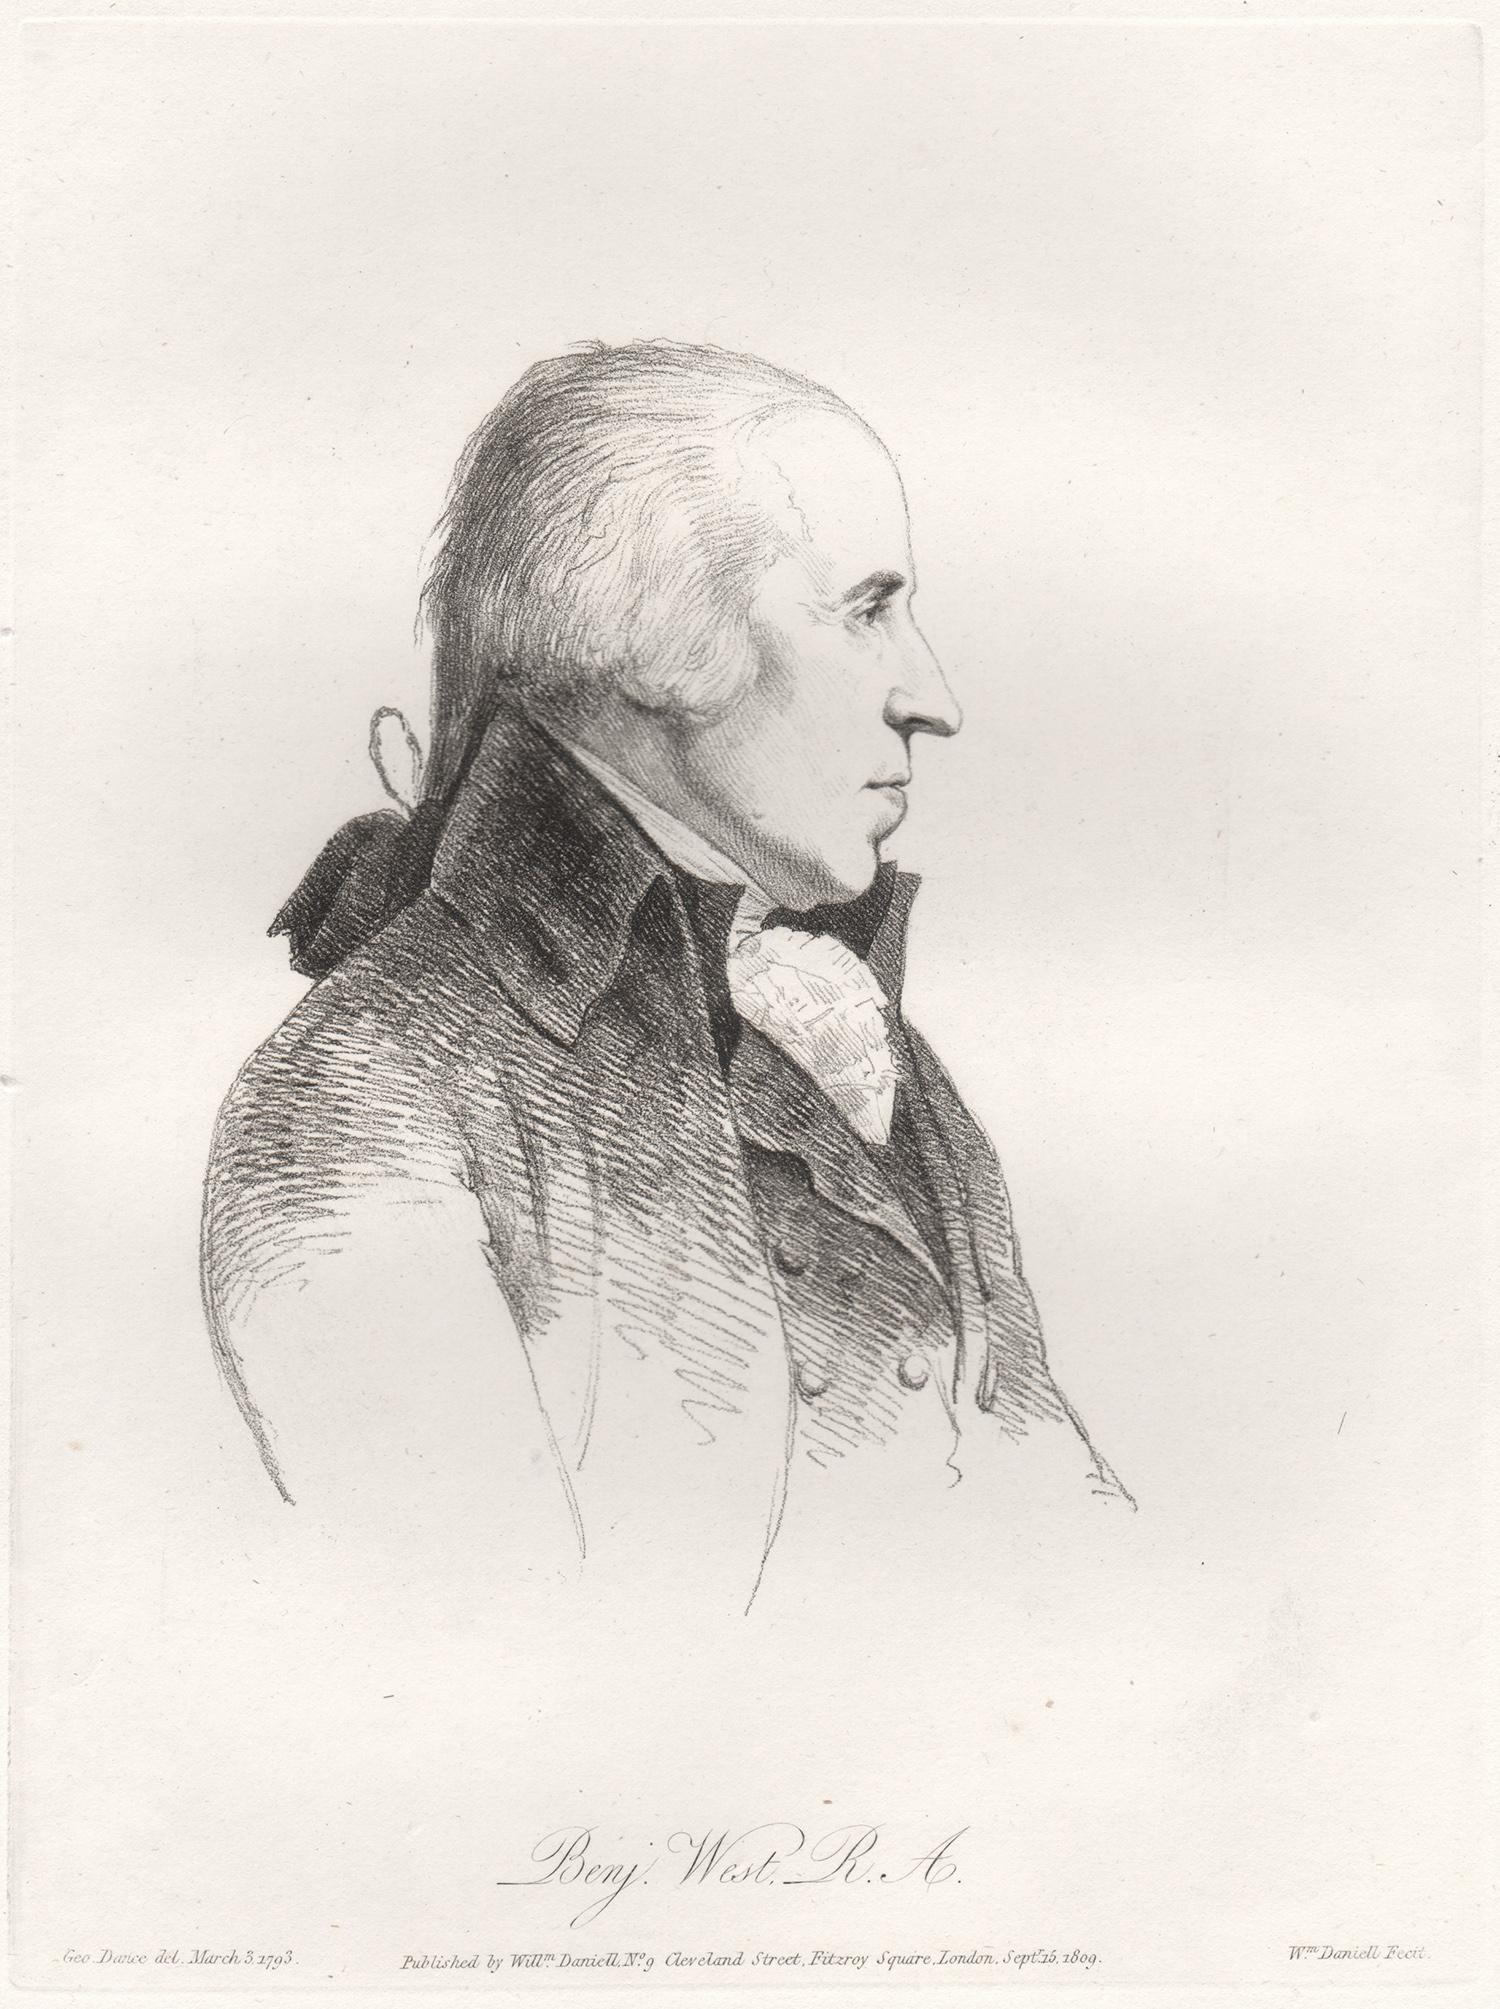 Benjamin West, peintre d'histoire, portrait, gravure à l'eau-forte sur fond tendre, 1809